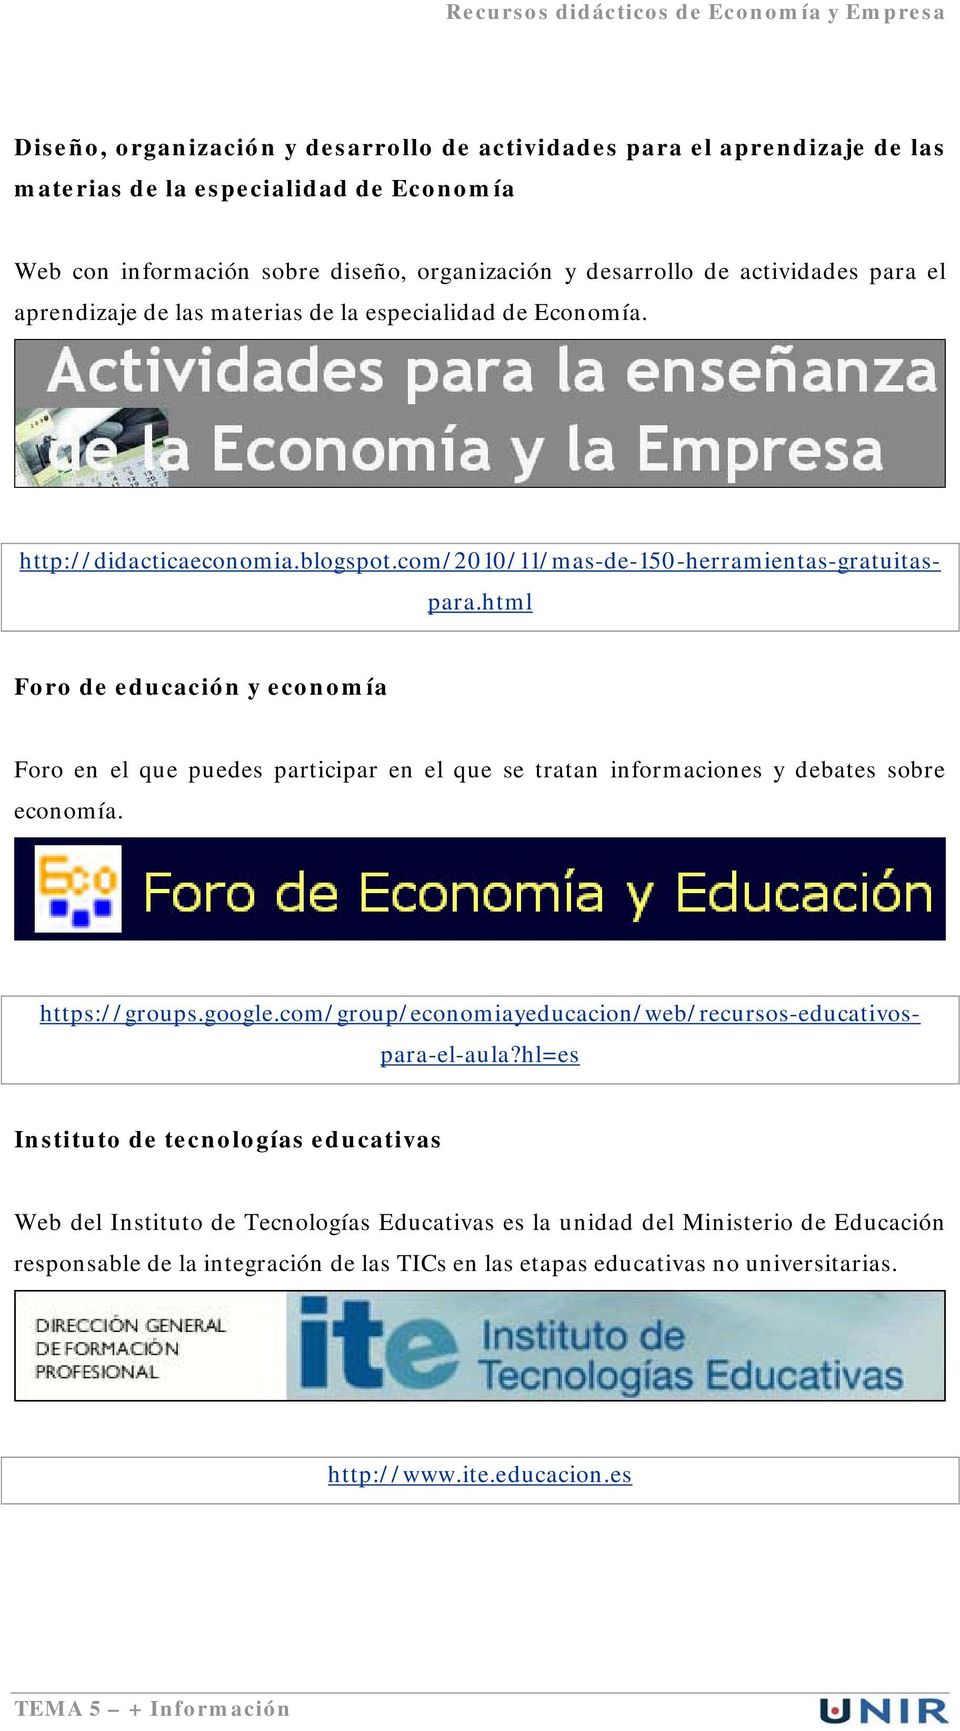 http://didacticaeconomia.blogspot.com/2010/11/mas-de-150-herramientas-gratuitaspara.html https://groups.google.com/group/economiayeducacion/web/recursos-educativospara-el-aula?